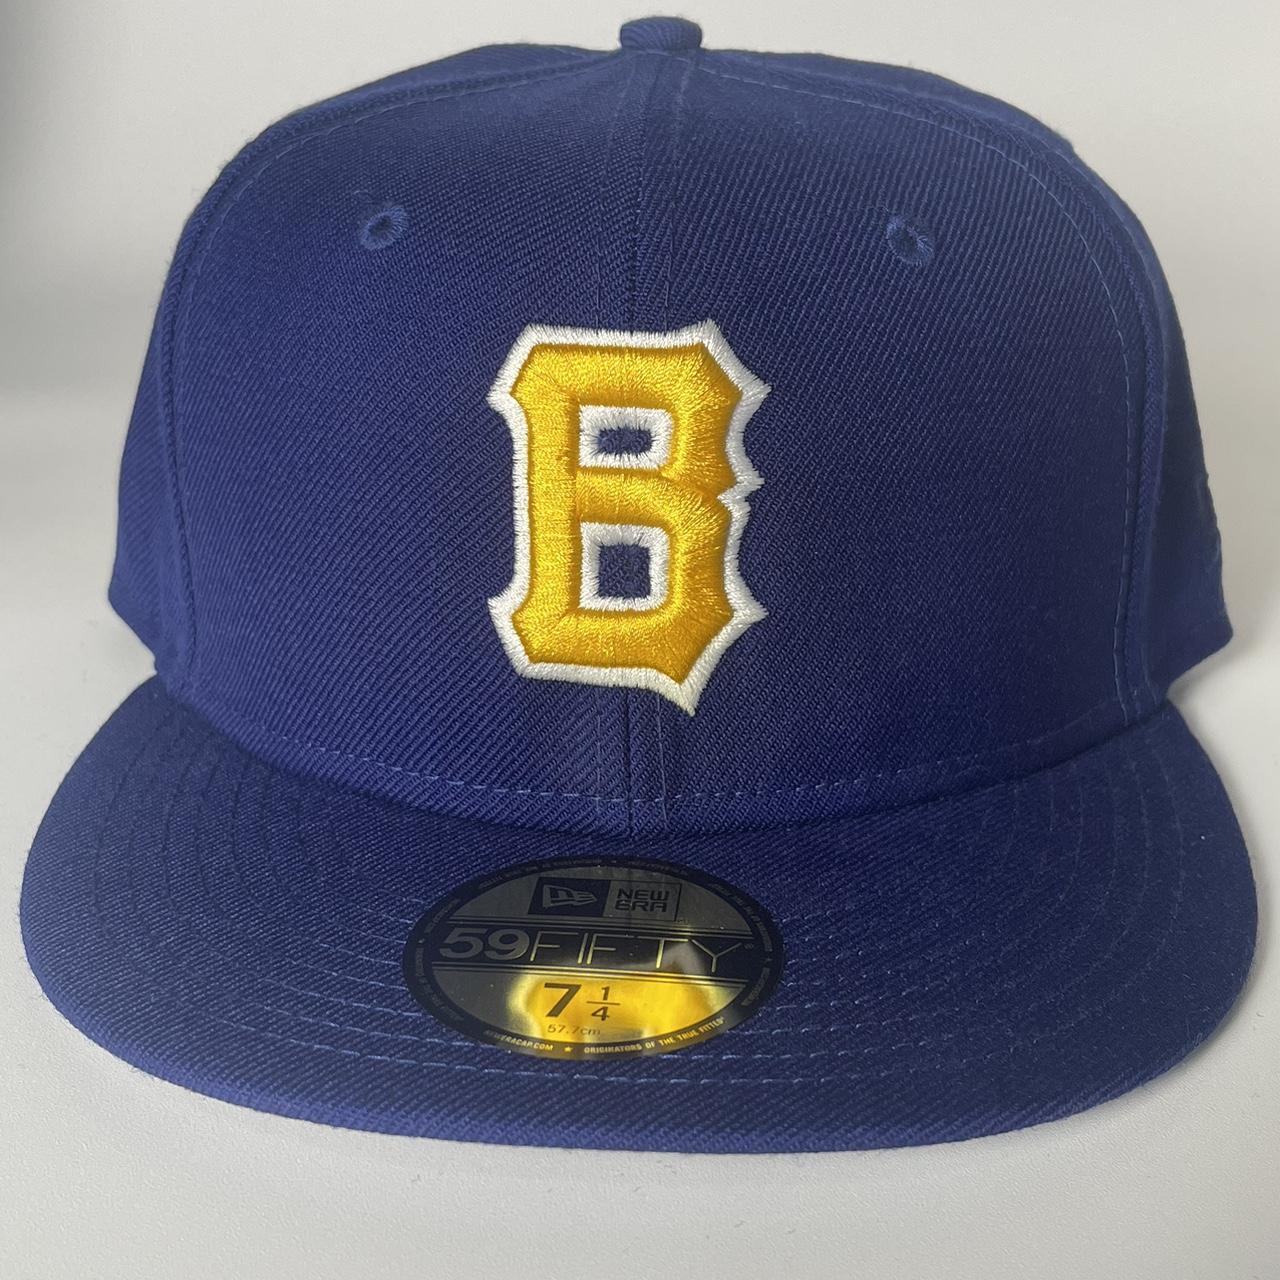 Boston bees Retro Style New Era Milb Hatclub